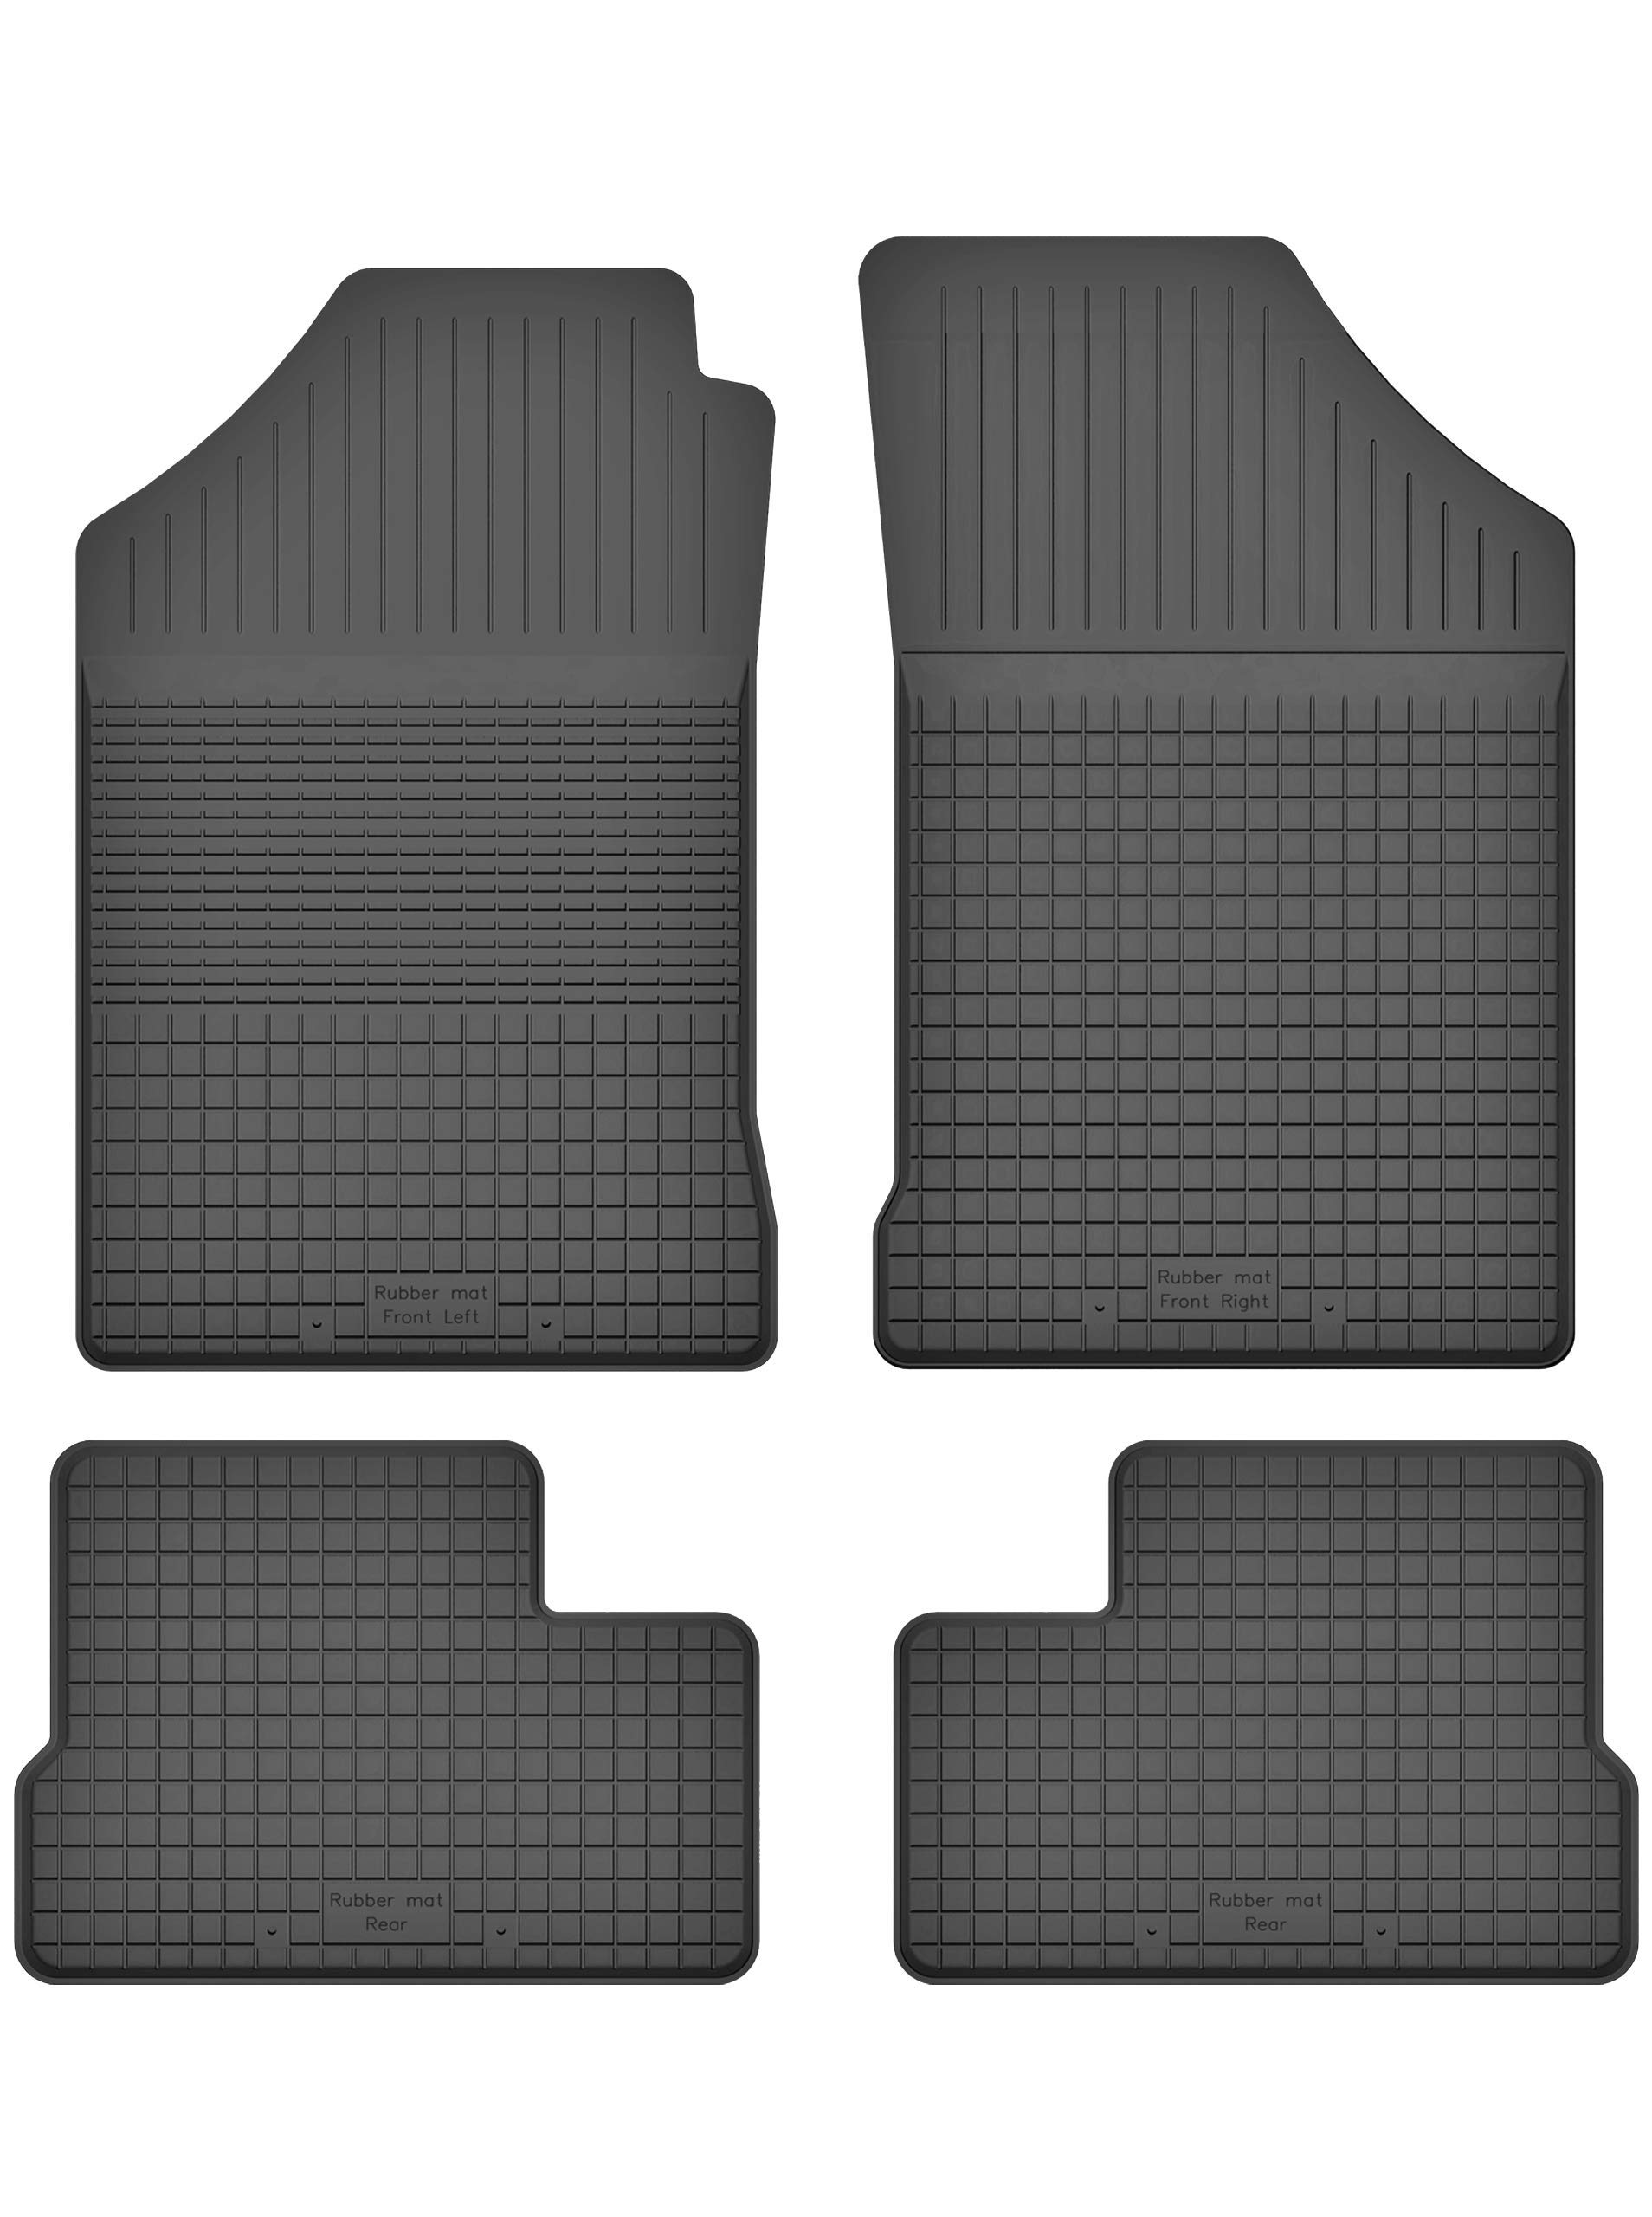 Gummimatten Fußmatten 1.5 cm Rand kompatibel mit OPEL Astra F (Bj. 1991-2002) ideal angepasst 4 -Teile EIN Set von KO-RUBBERMAT